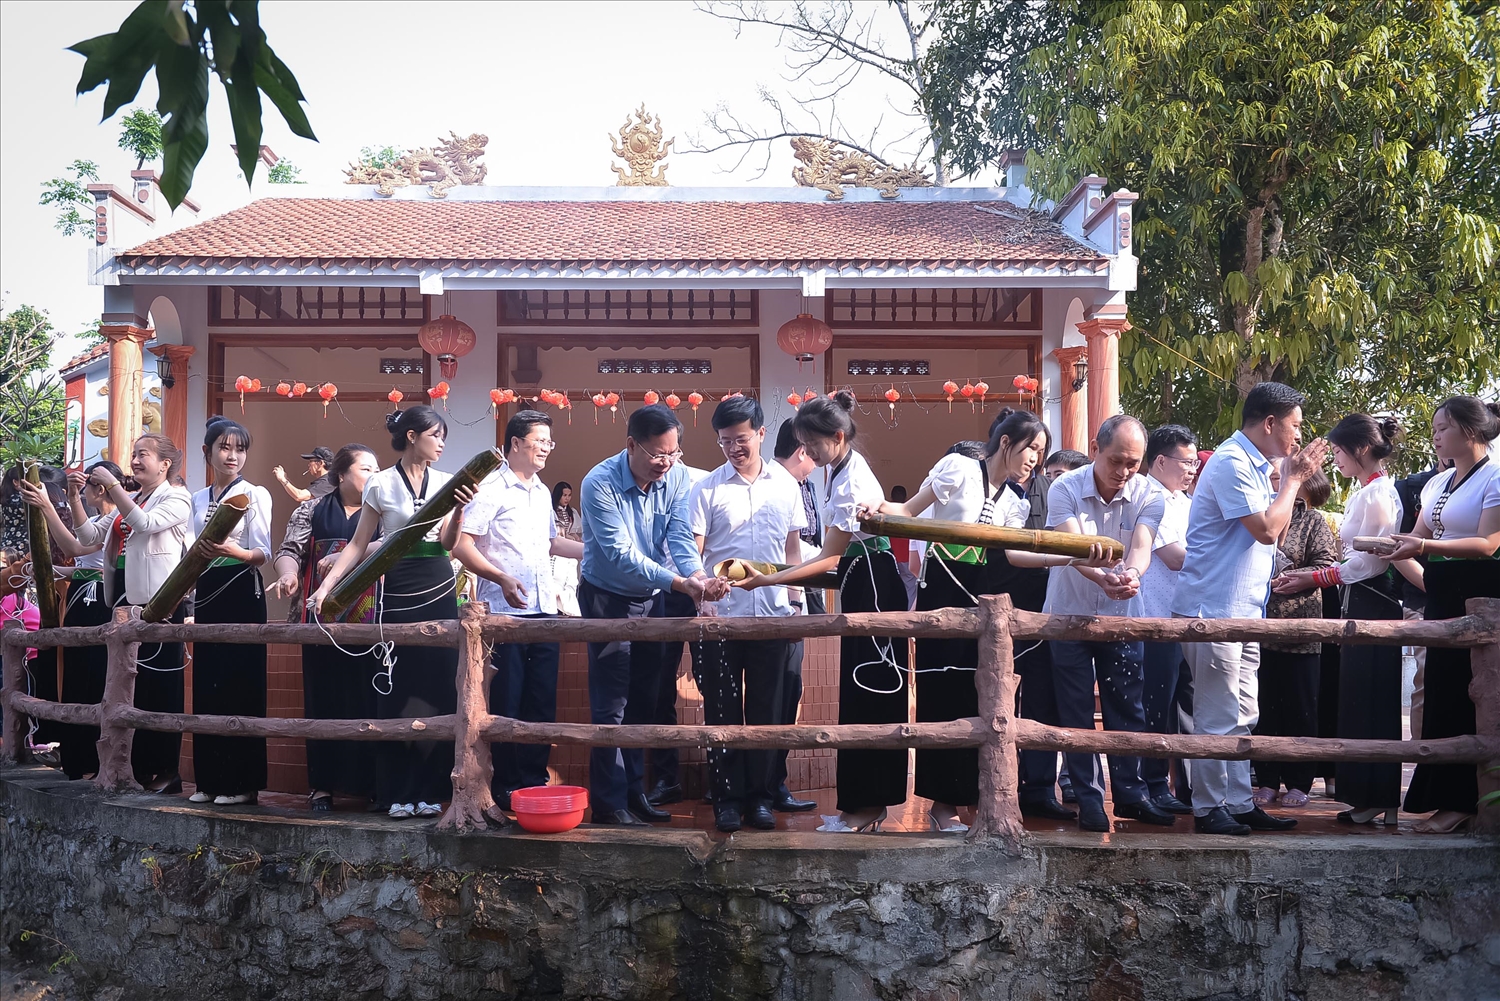  Vào ngày chính hội, người dân và du khách thường đến mó nước Nàng Han lấy nước để rửa tay, chải tóc cầu may